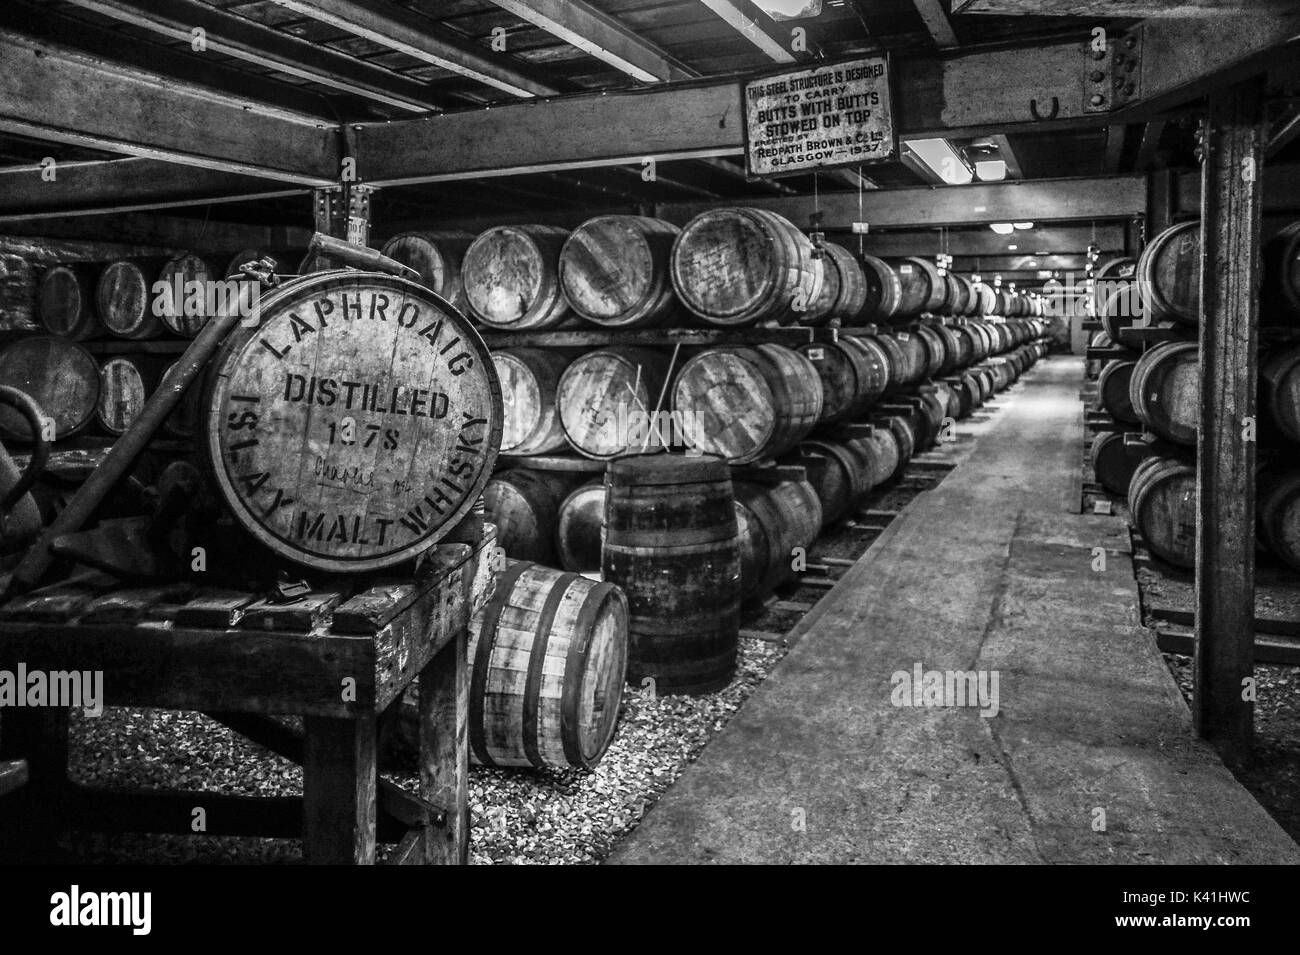 Image en noir et blanc de maturation du whisky dans des fûts à la célèbre distillerie laphroaig, Isle of islay, Ecosse Banque D'Images